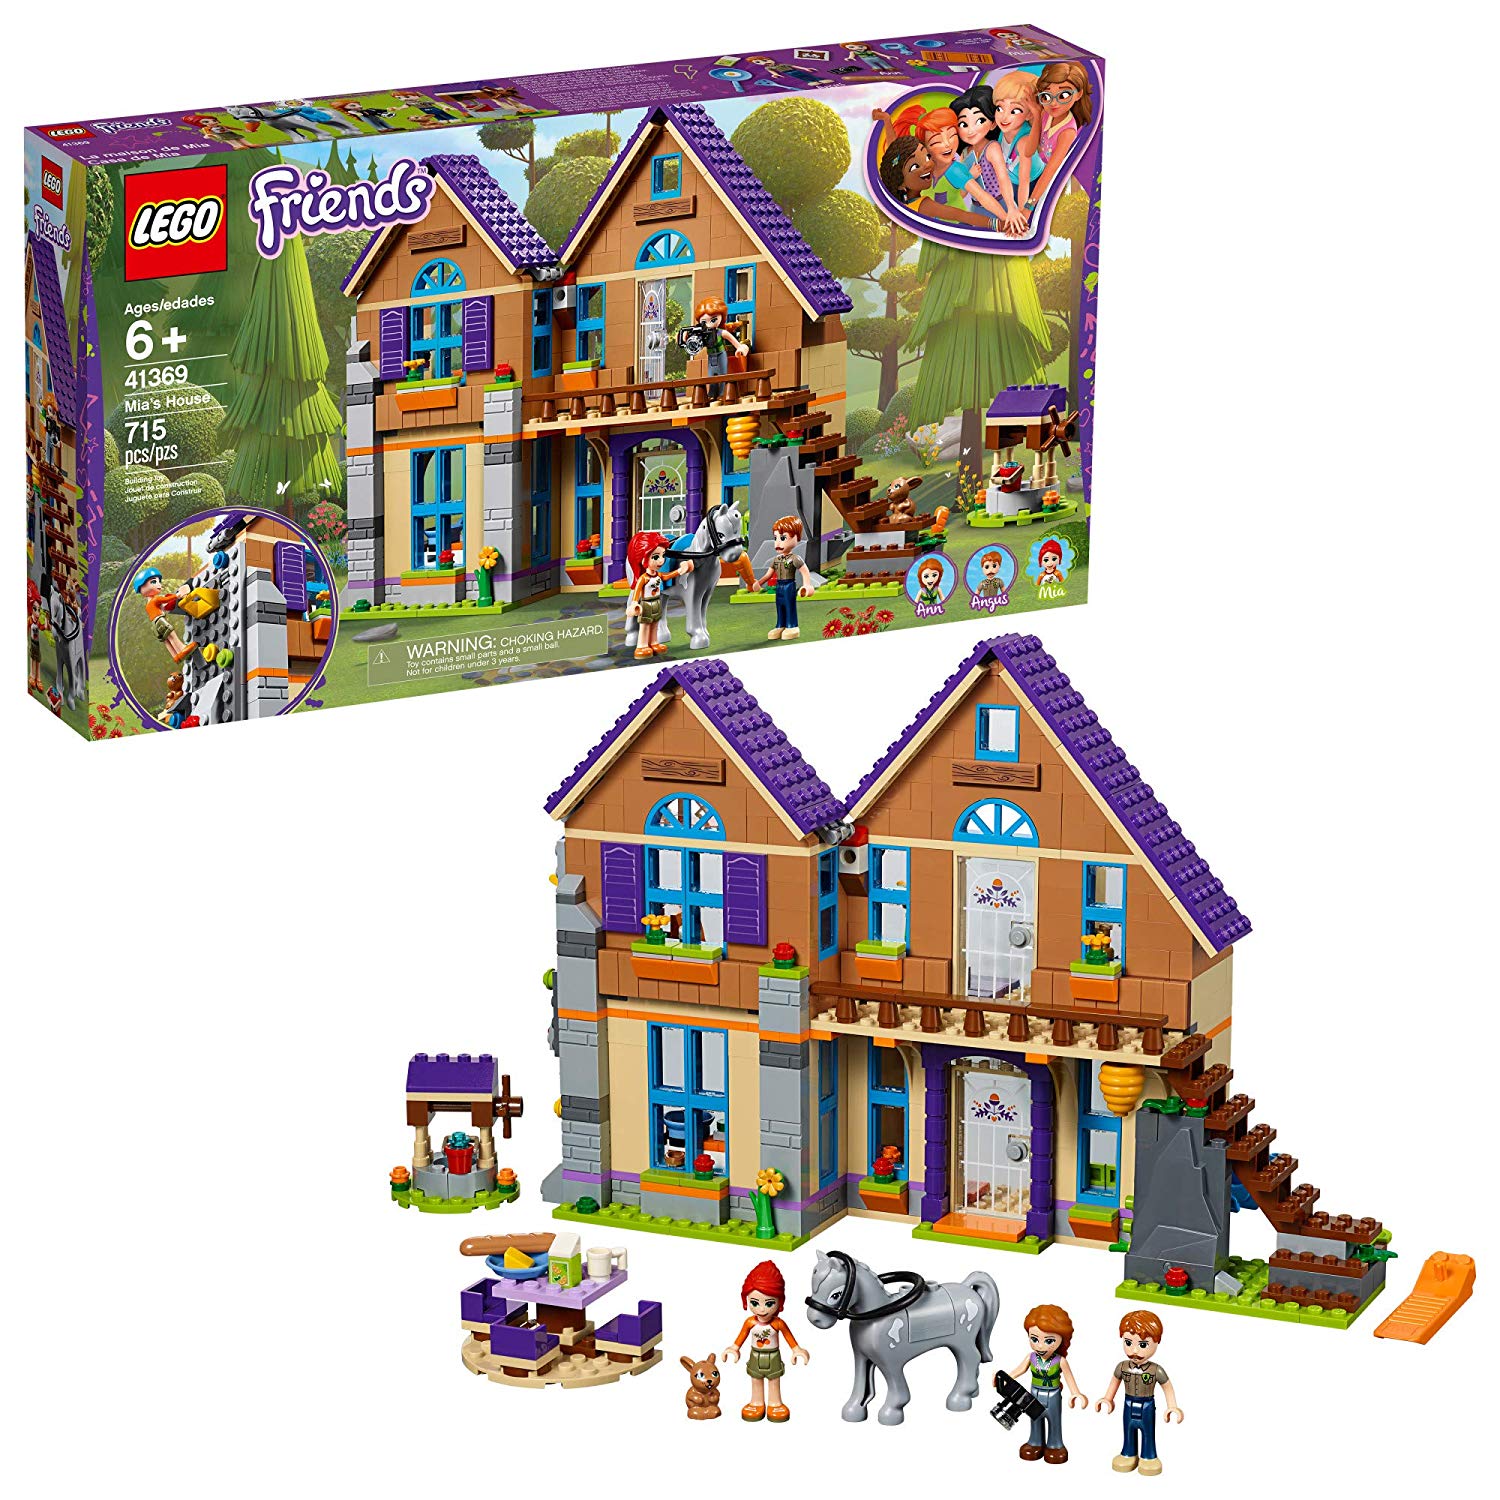 Friends Lego Mias House 41369 Construction Kit New 2019 (715 Pieces)